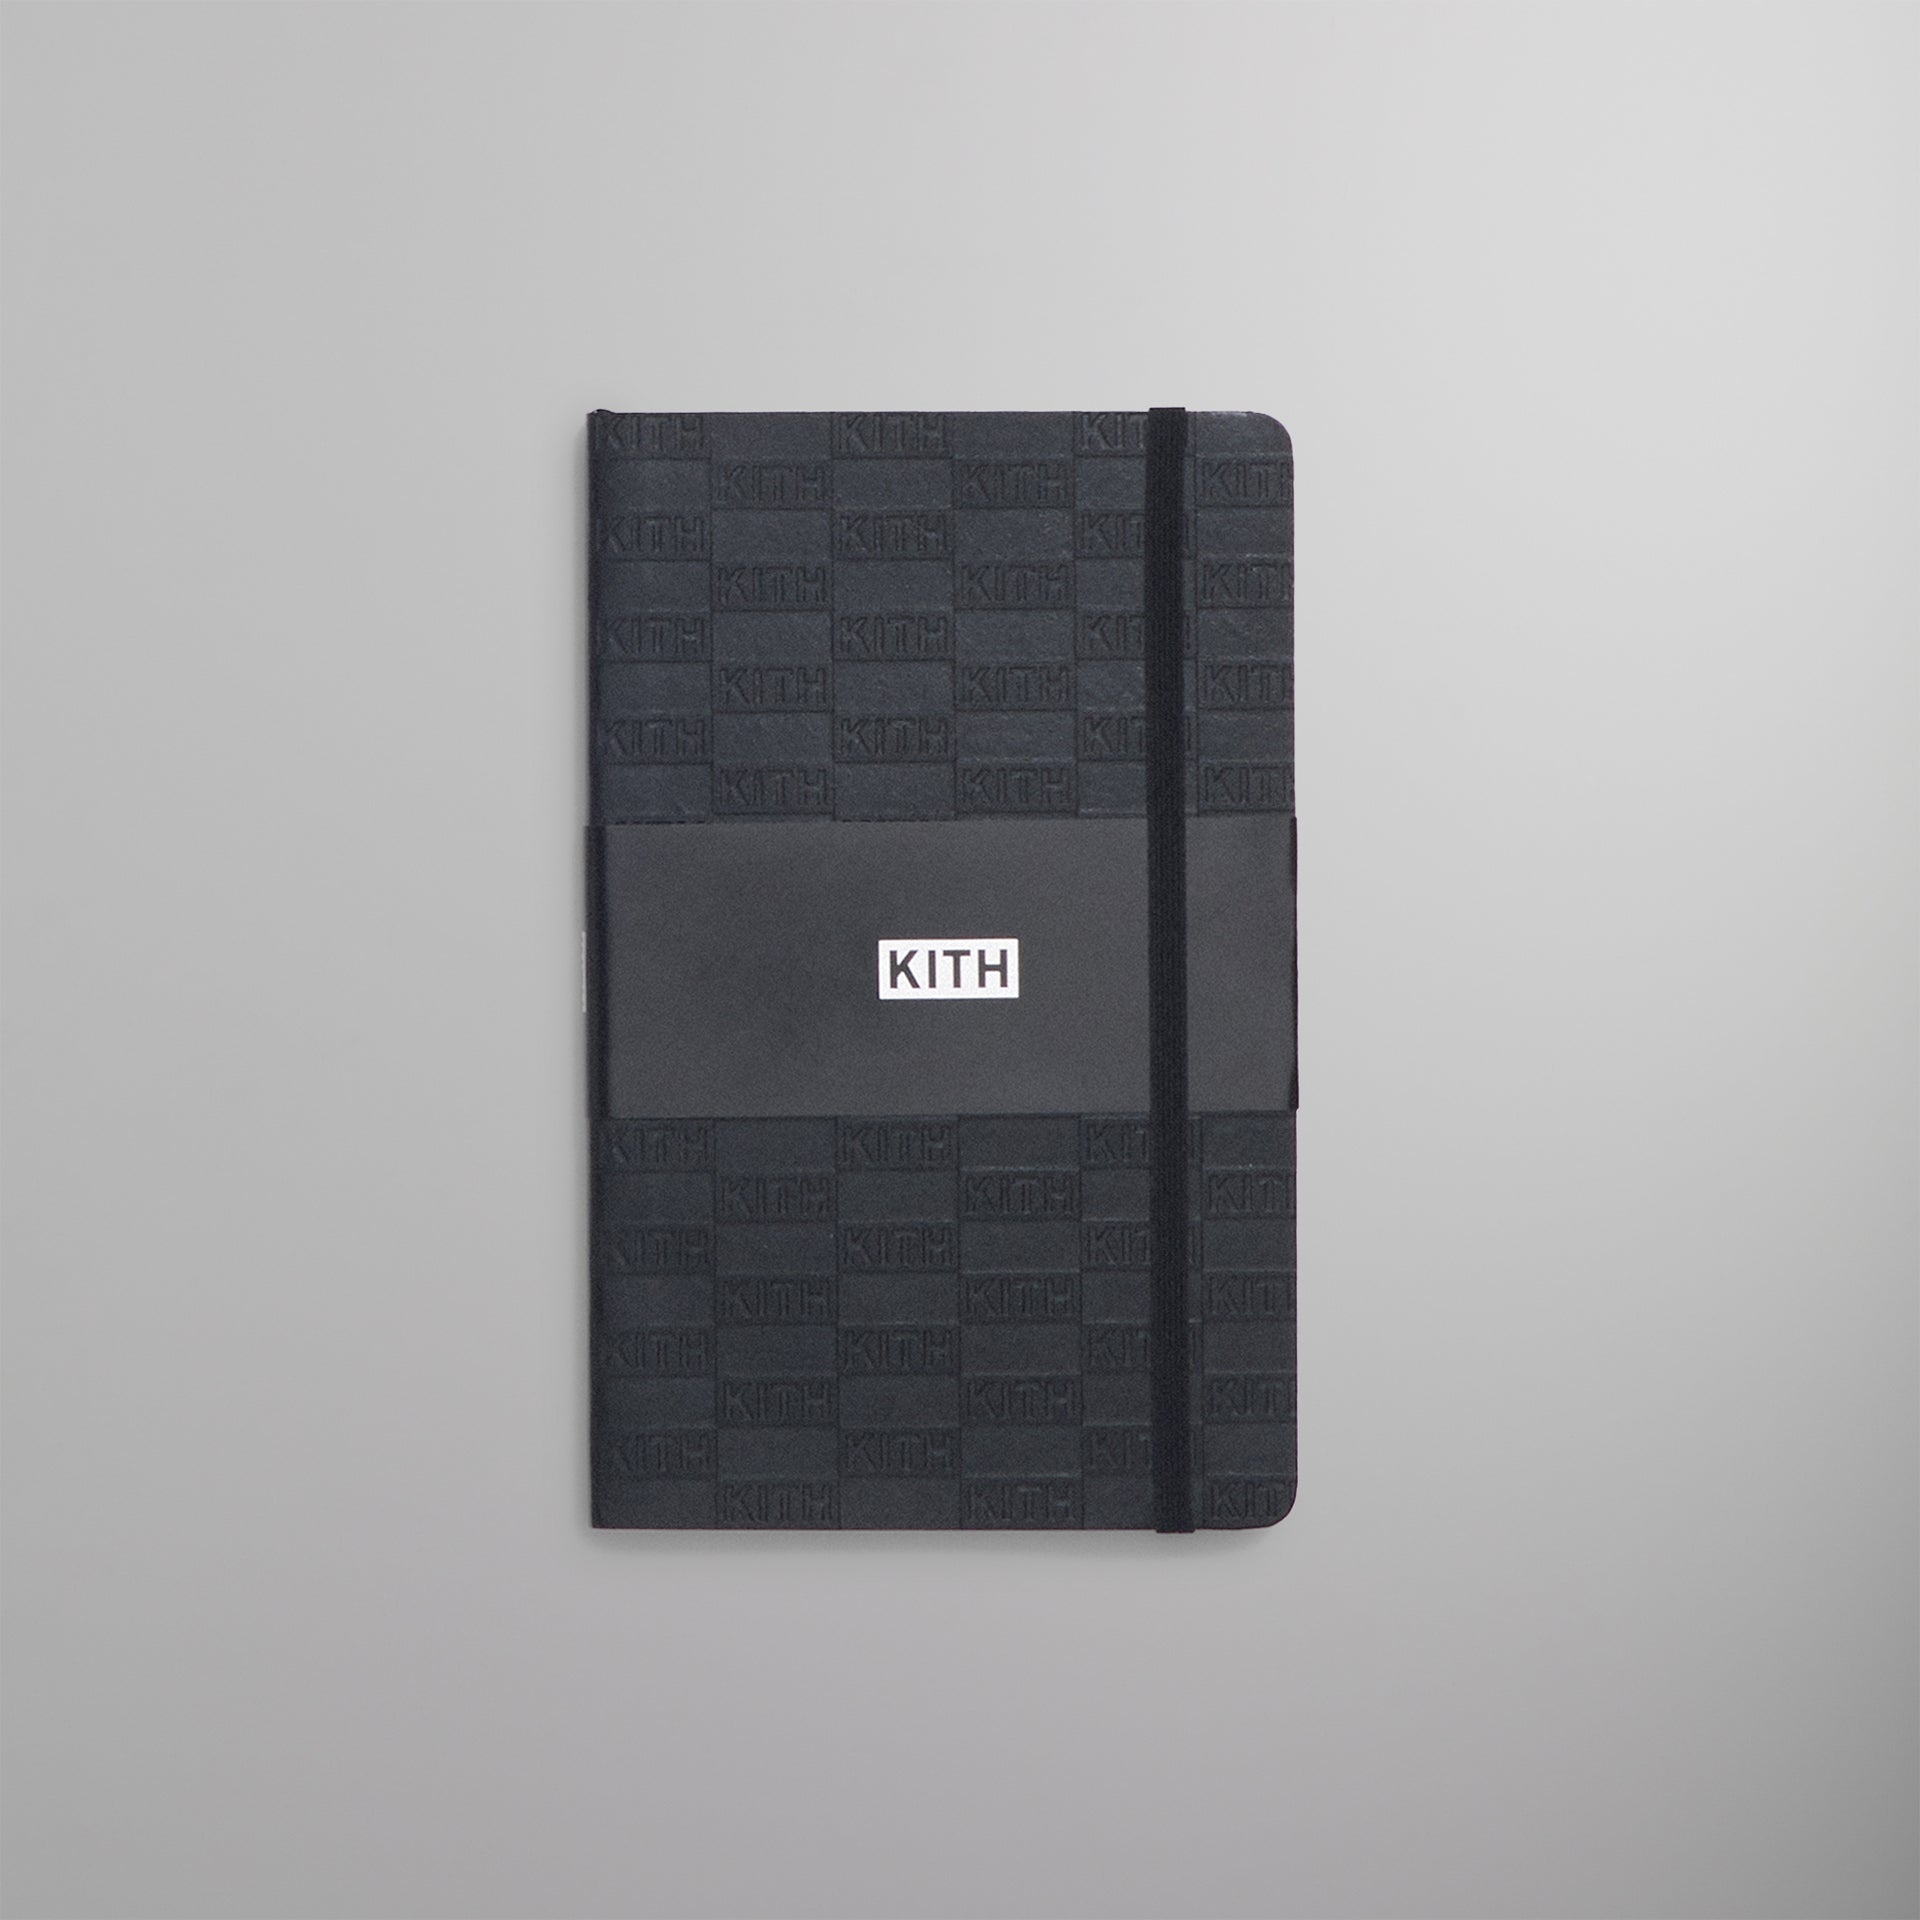 UrlfreezeShops Moleskine Notebook - Black